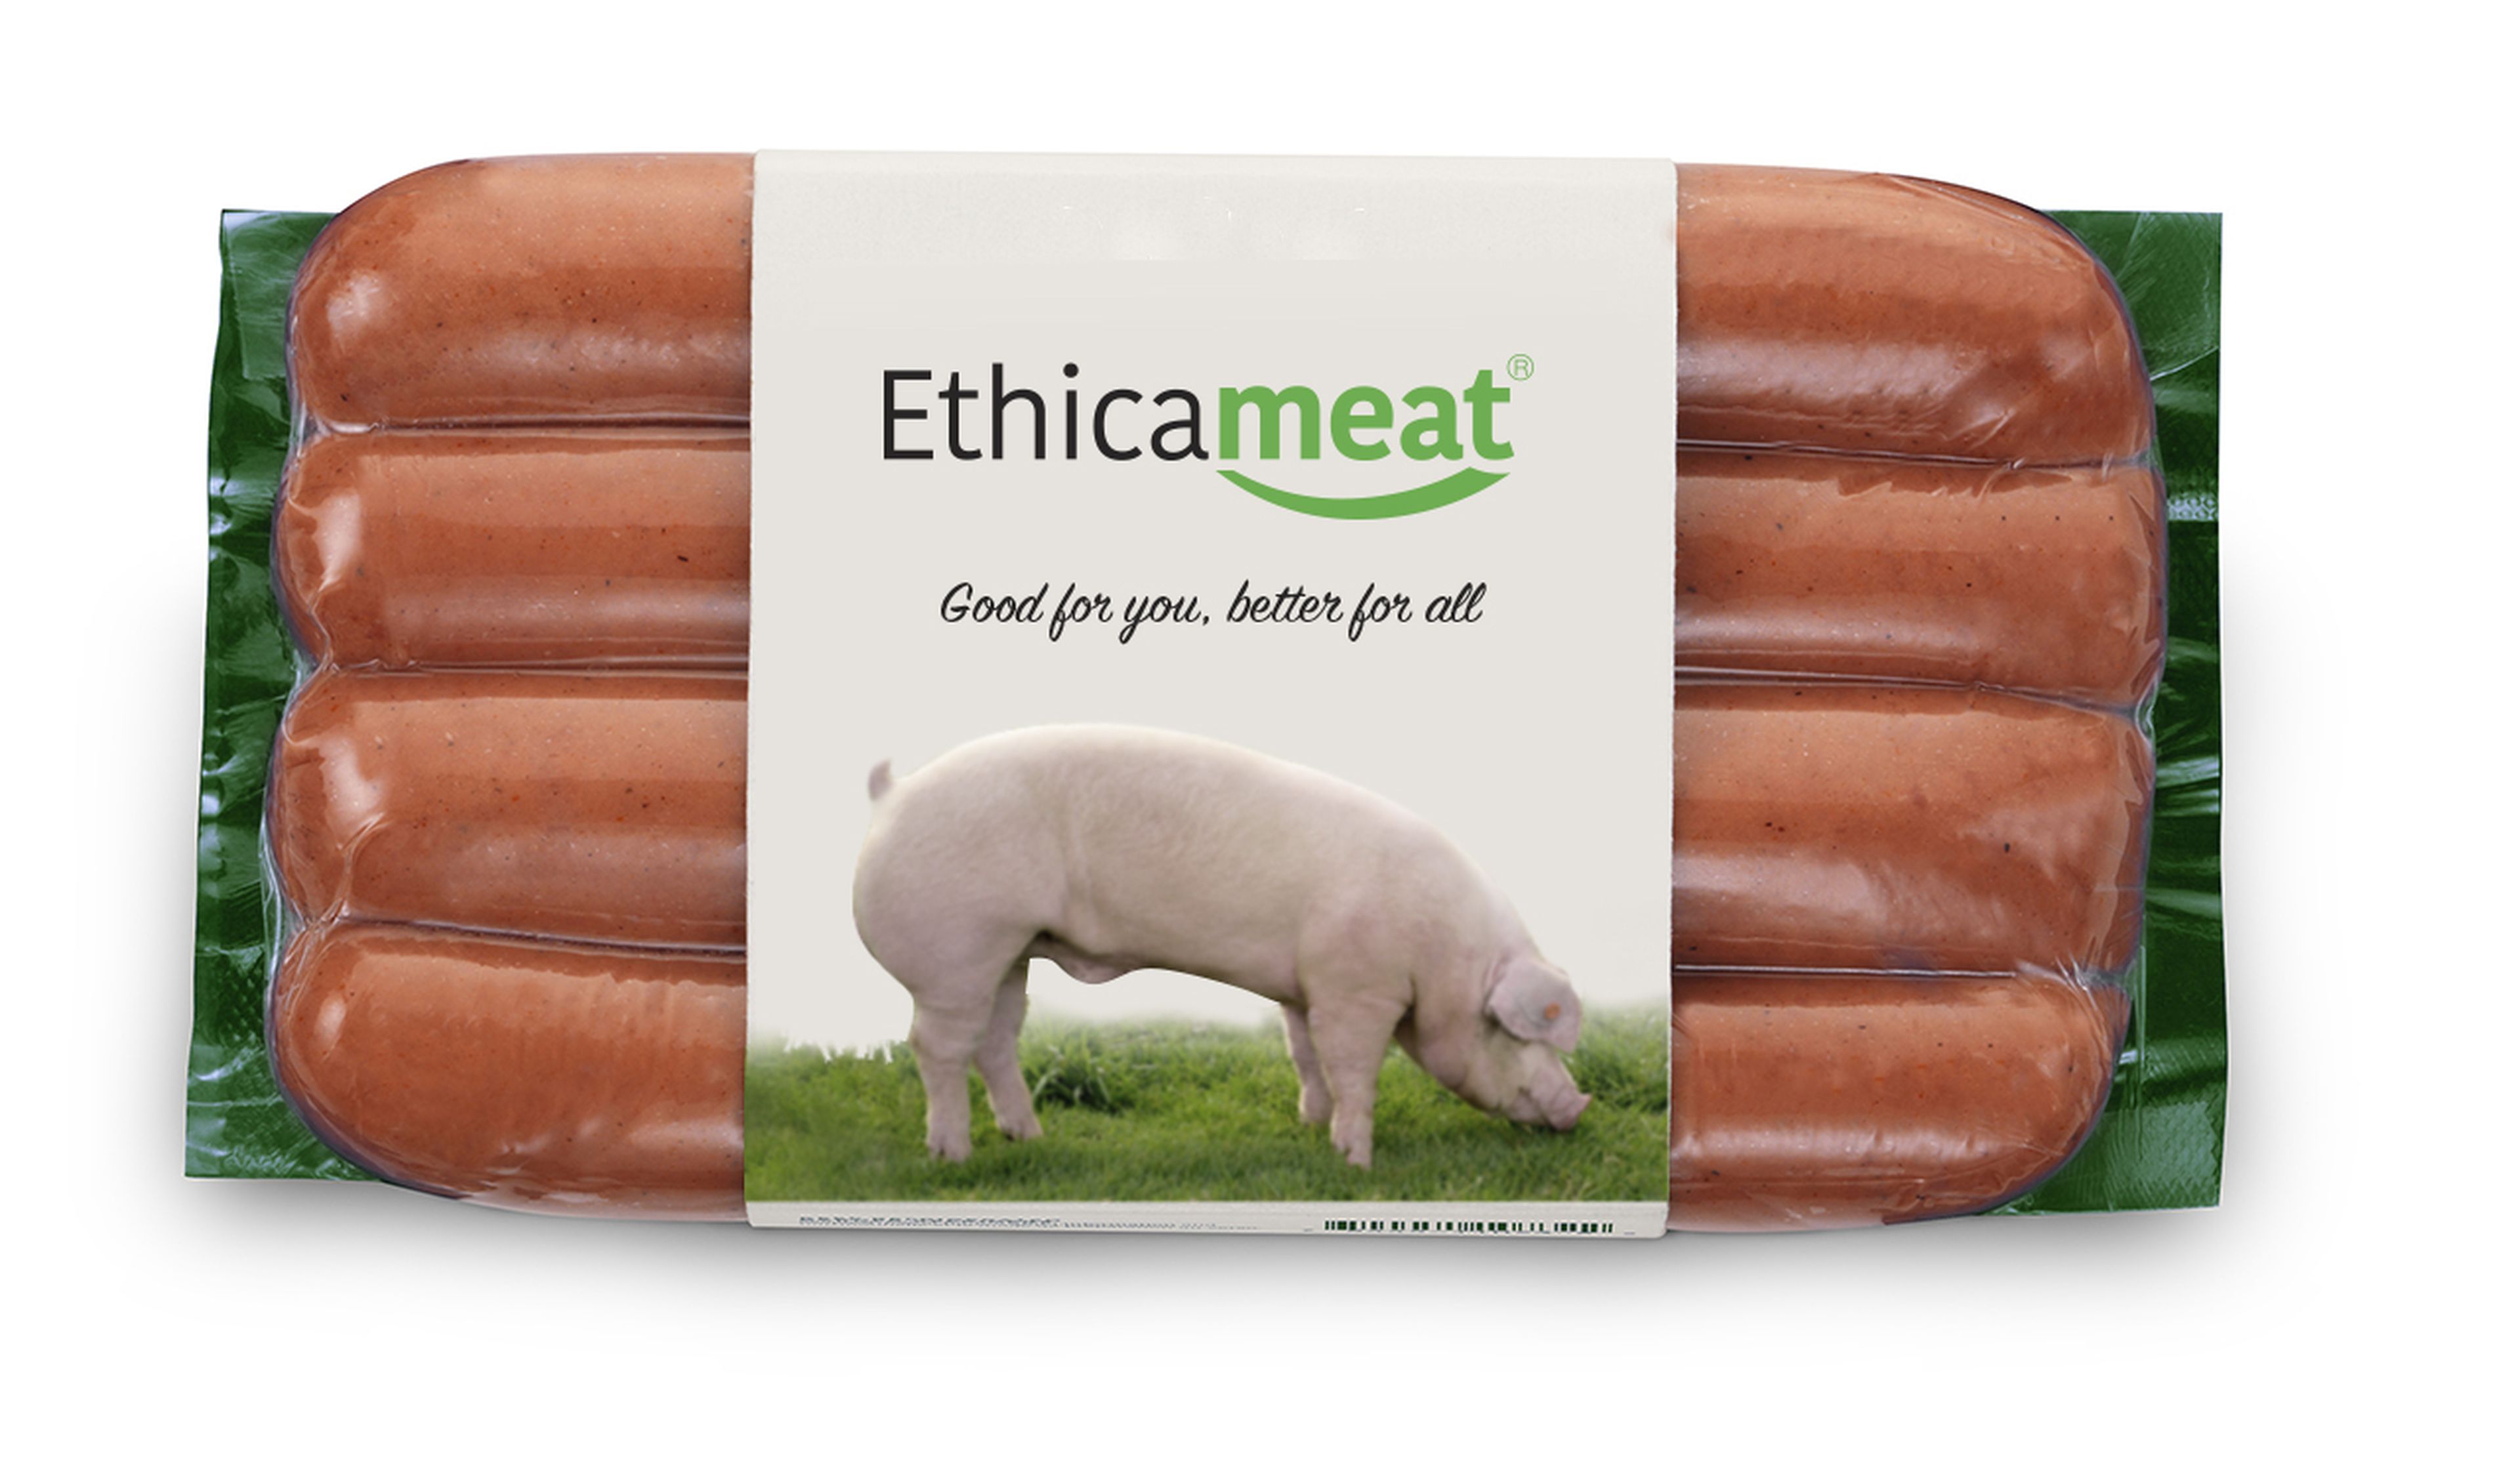 El producto lanzado por Bio- Tech Foods, Ethical Meat